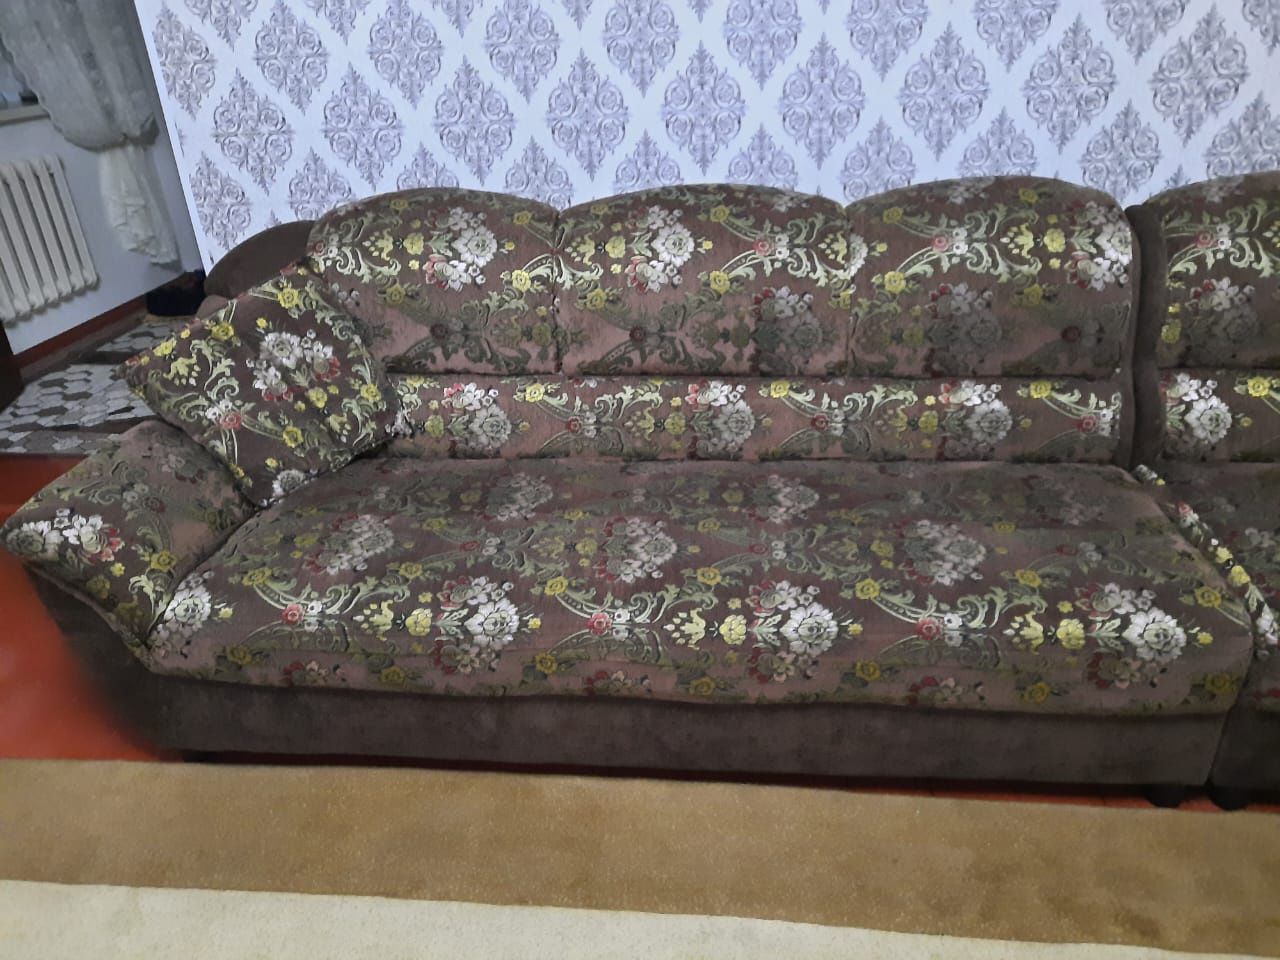 Продается диван. Состояние хорошее.  Размер 4 метра